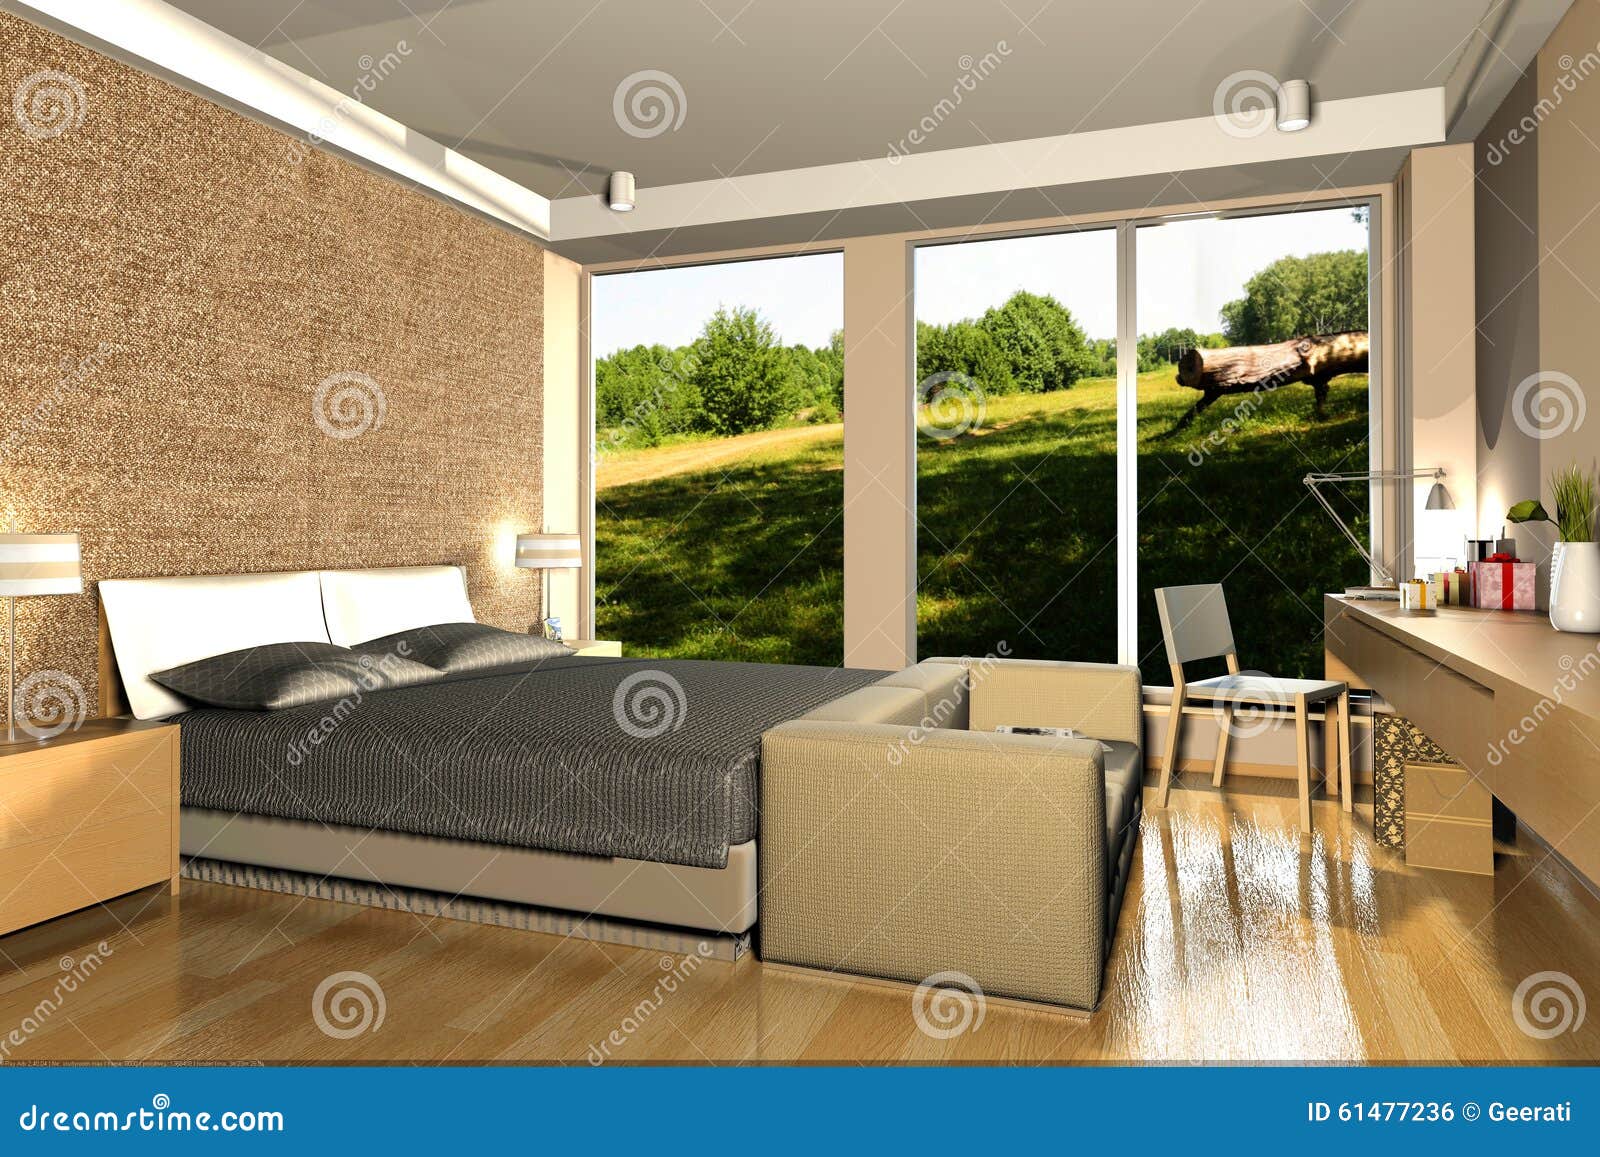 Interior Of Modern Bedroom 3d Rendering Stock Illustration ...